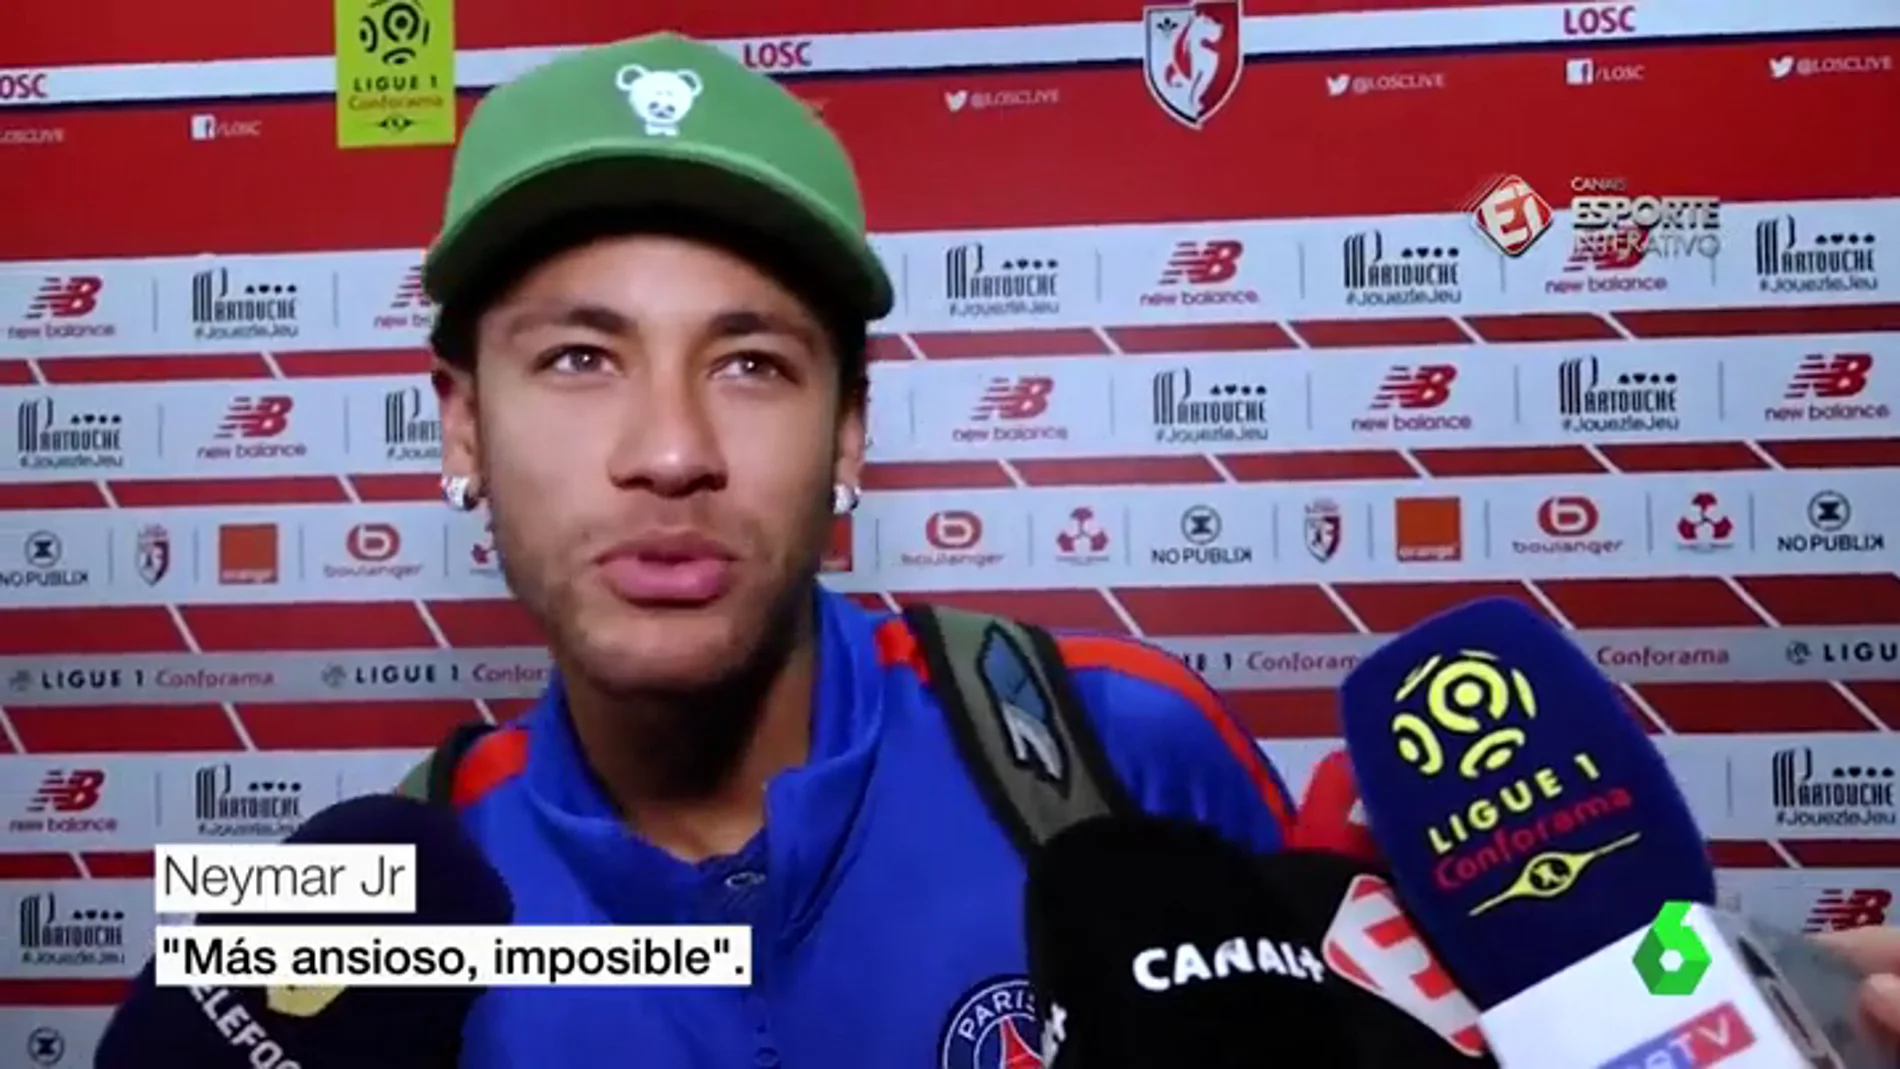 Neymar: "Estoy ansioso por jugar contra el Madrid, quiero que llegue ese día ya"